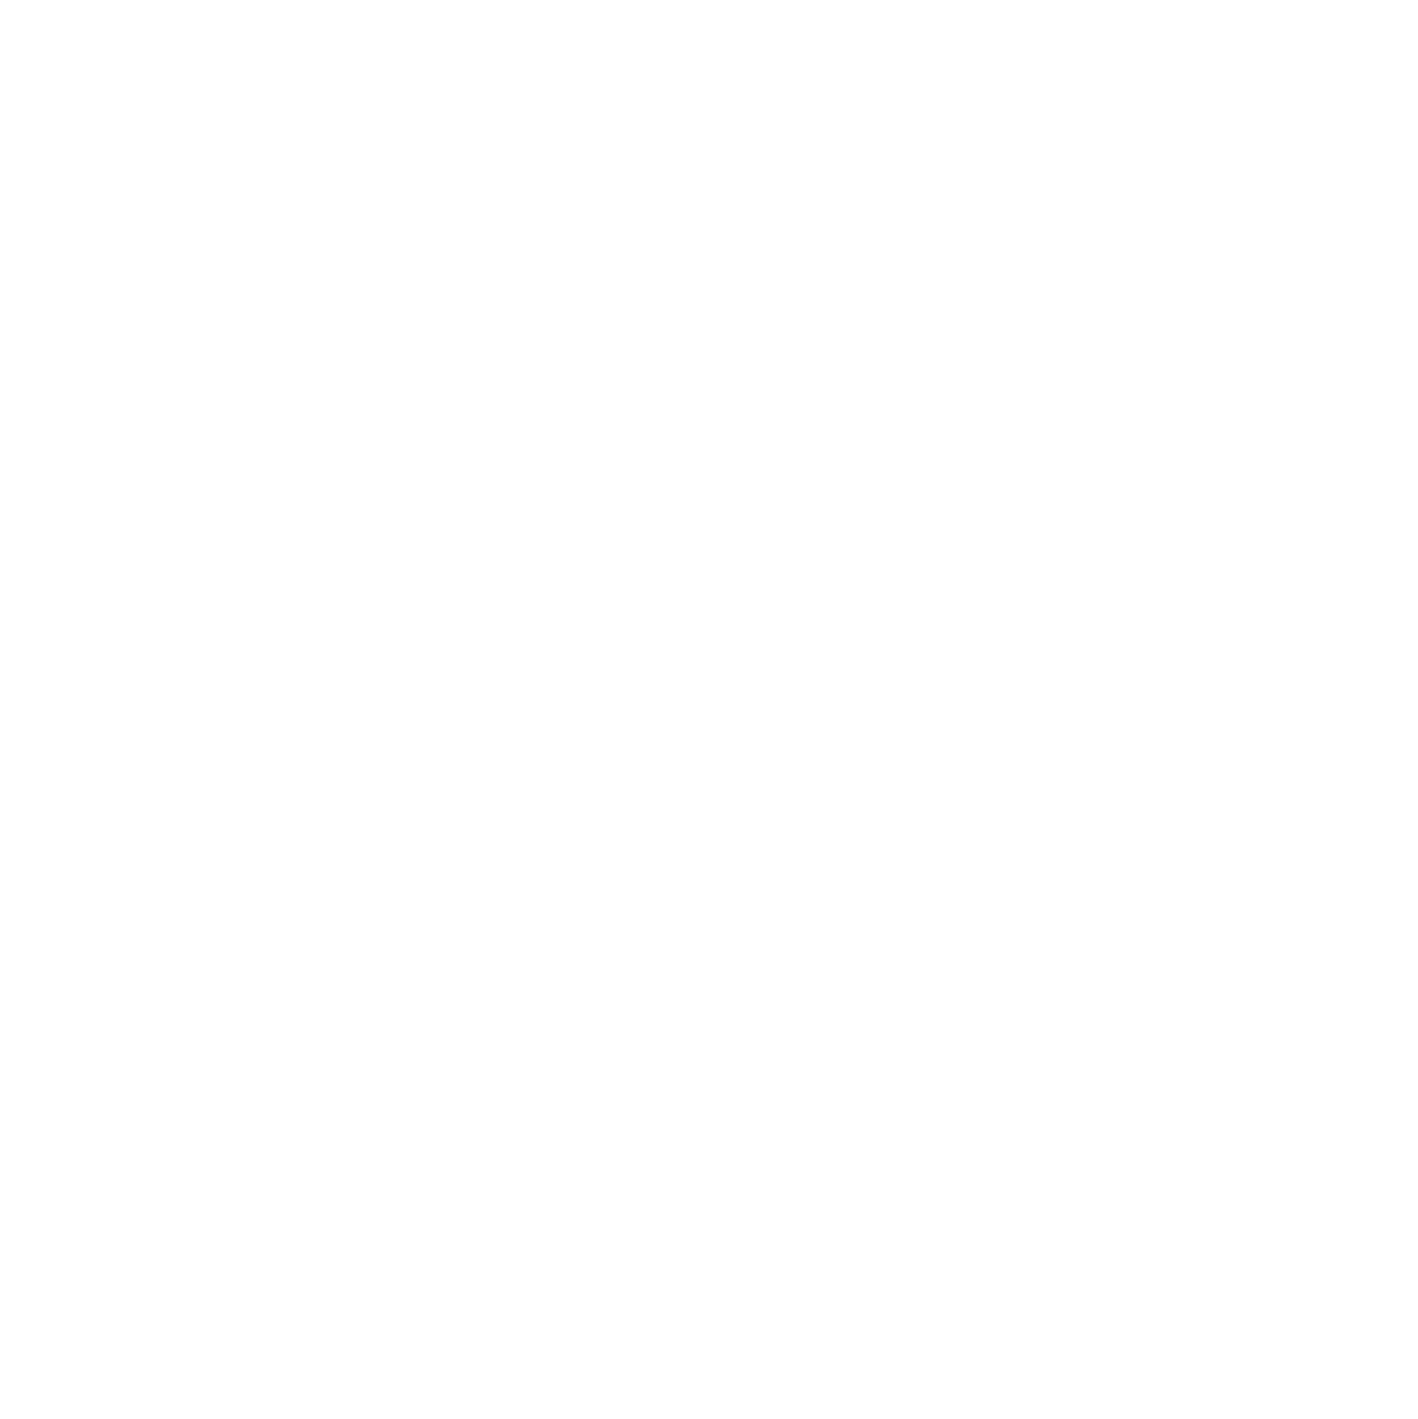 L'Iliade